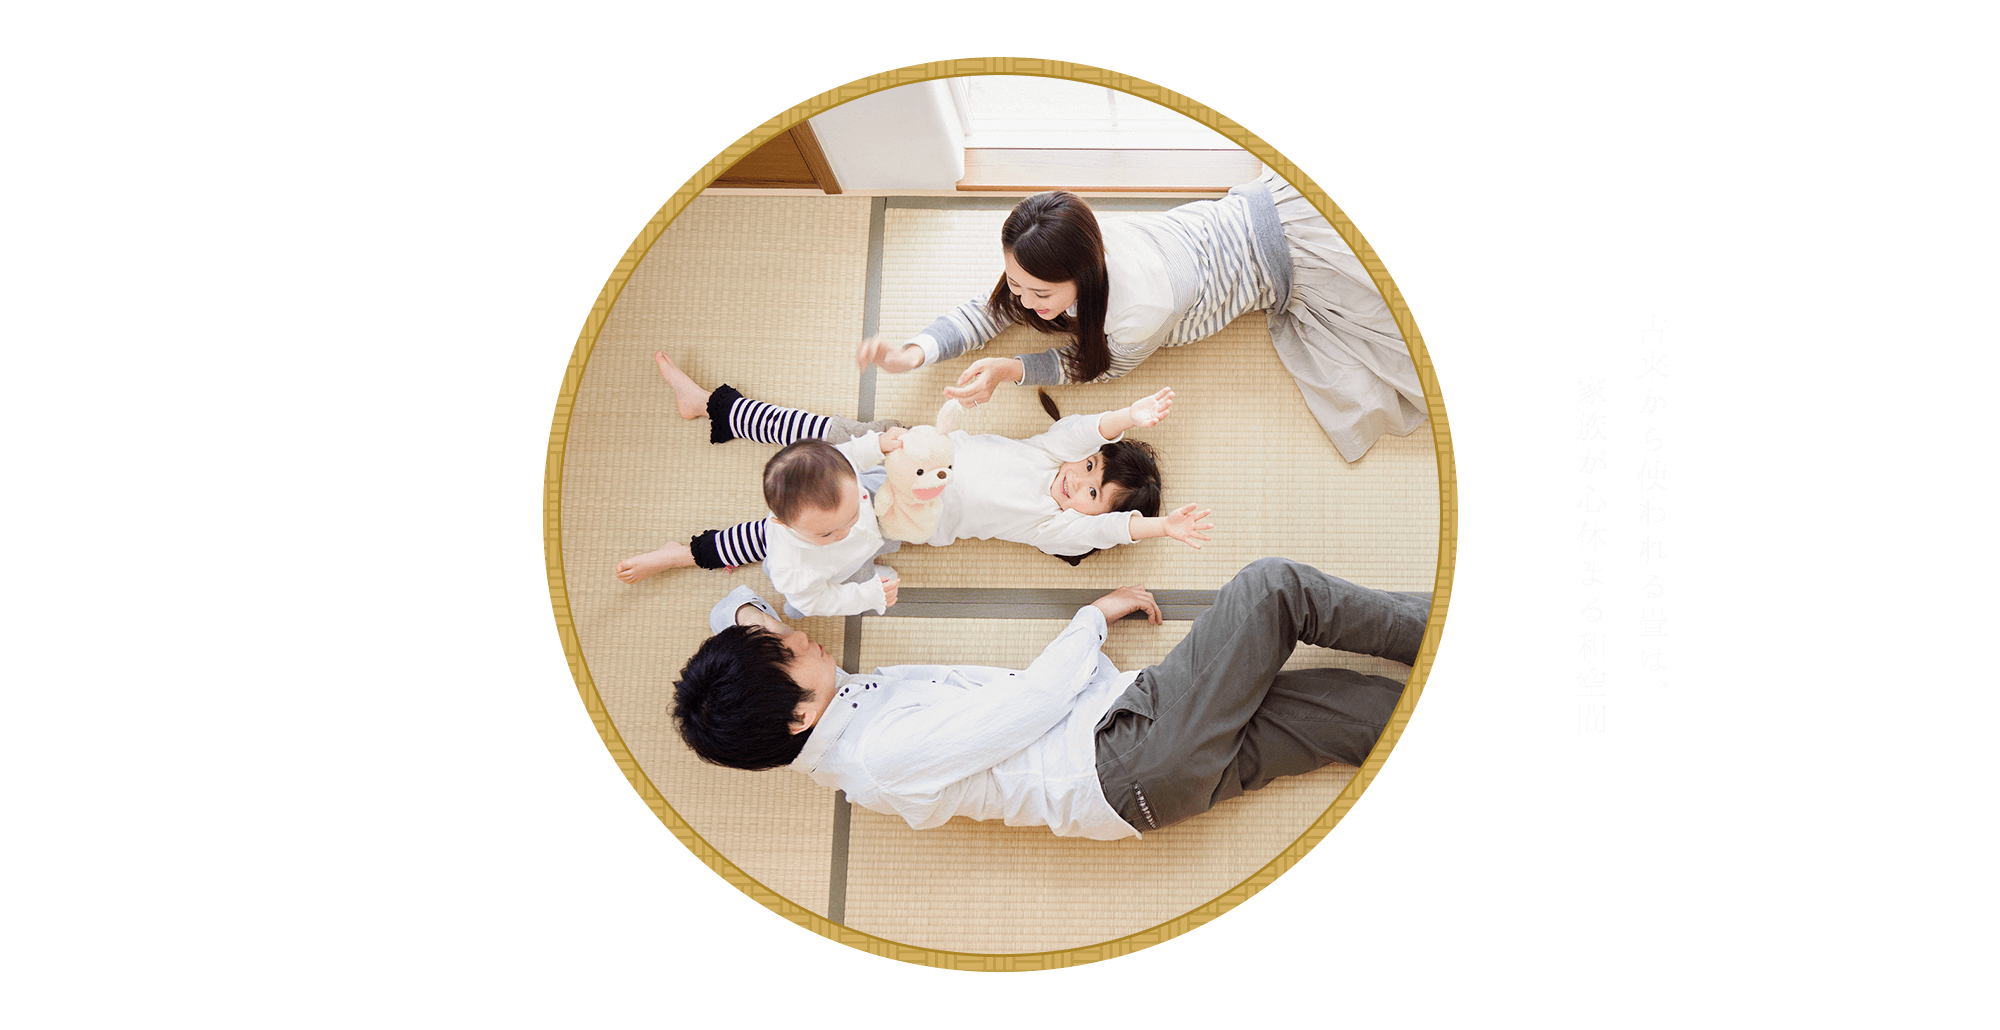 古来から使われる畳は、家族が心休まる和空間